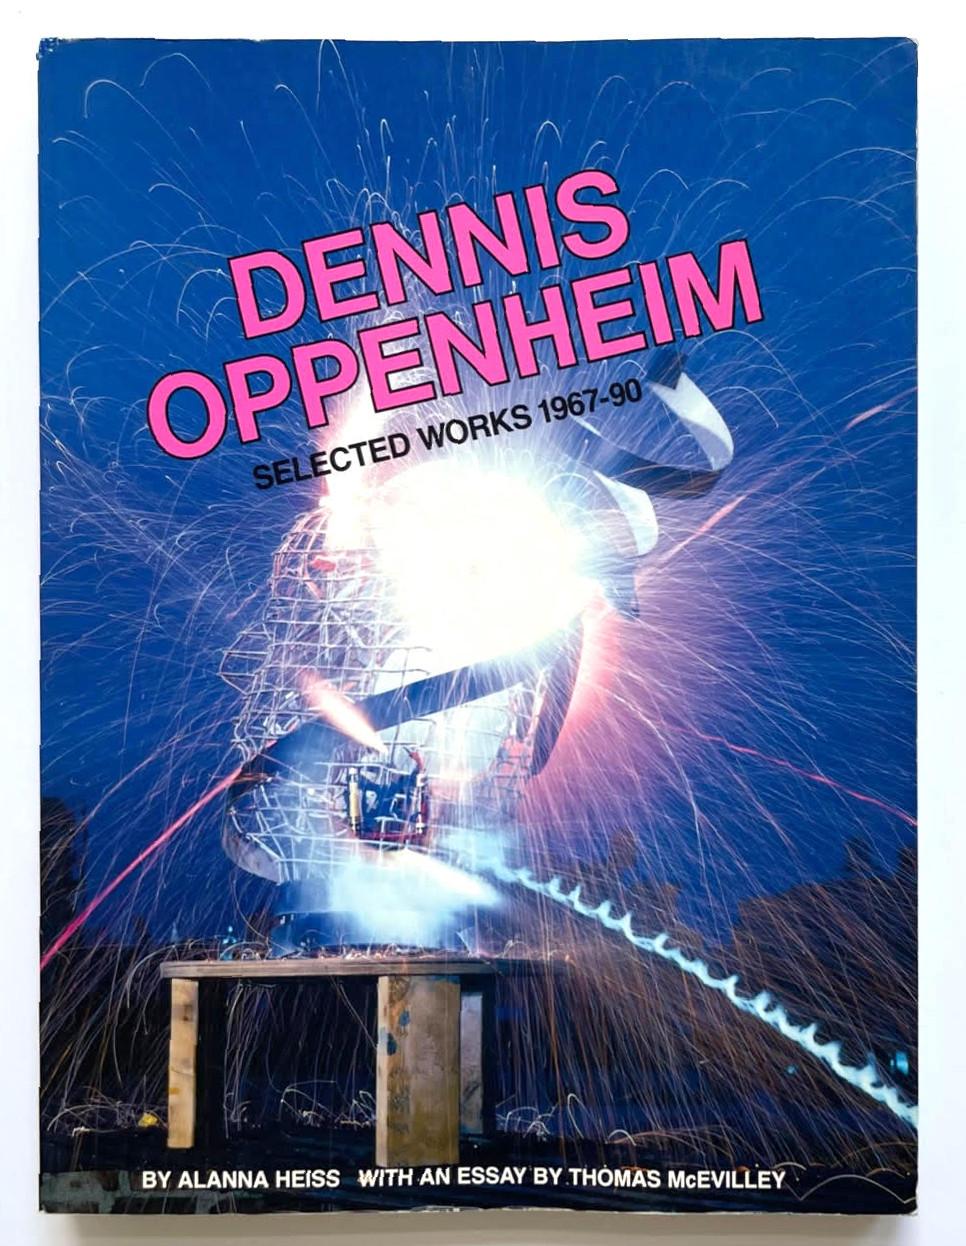 Dennis Oppenheim
Dennis Oppenheim: Ausgewählte Werke 1967-90 : And the Mind Grew Fingers (mit separat eingelegtem handschriftlich signiertem Brief), 1992
Broschiertes Buch mit separatem, handschriftlich signiertem Brief eingelegt
Es enthält einen